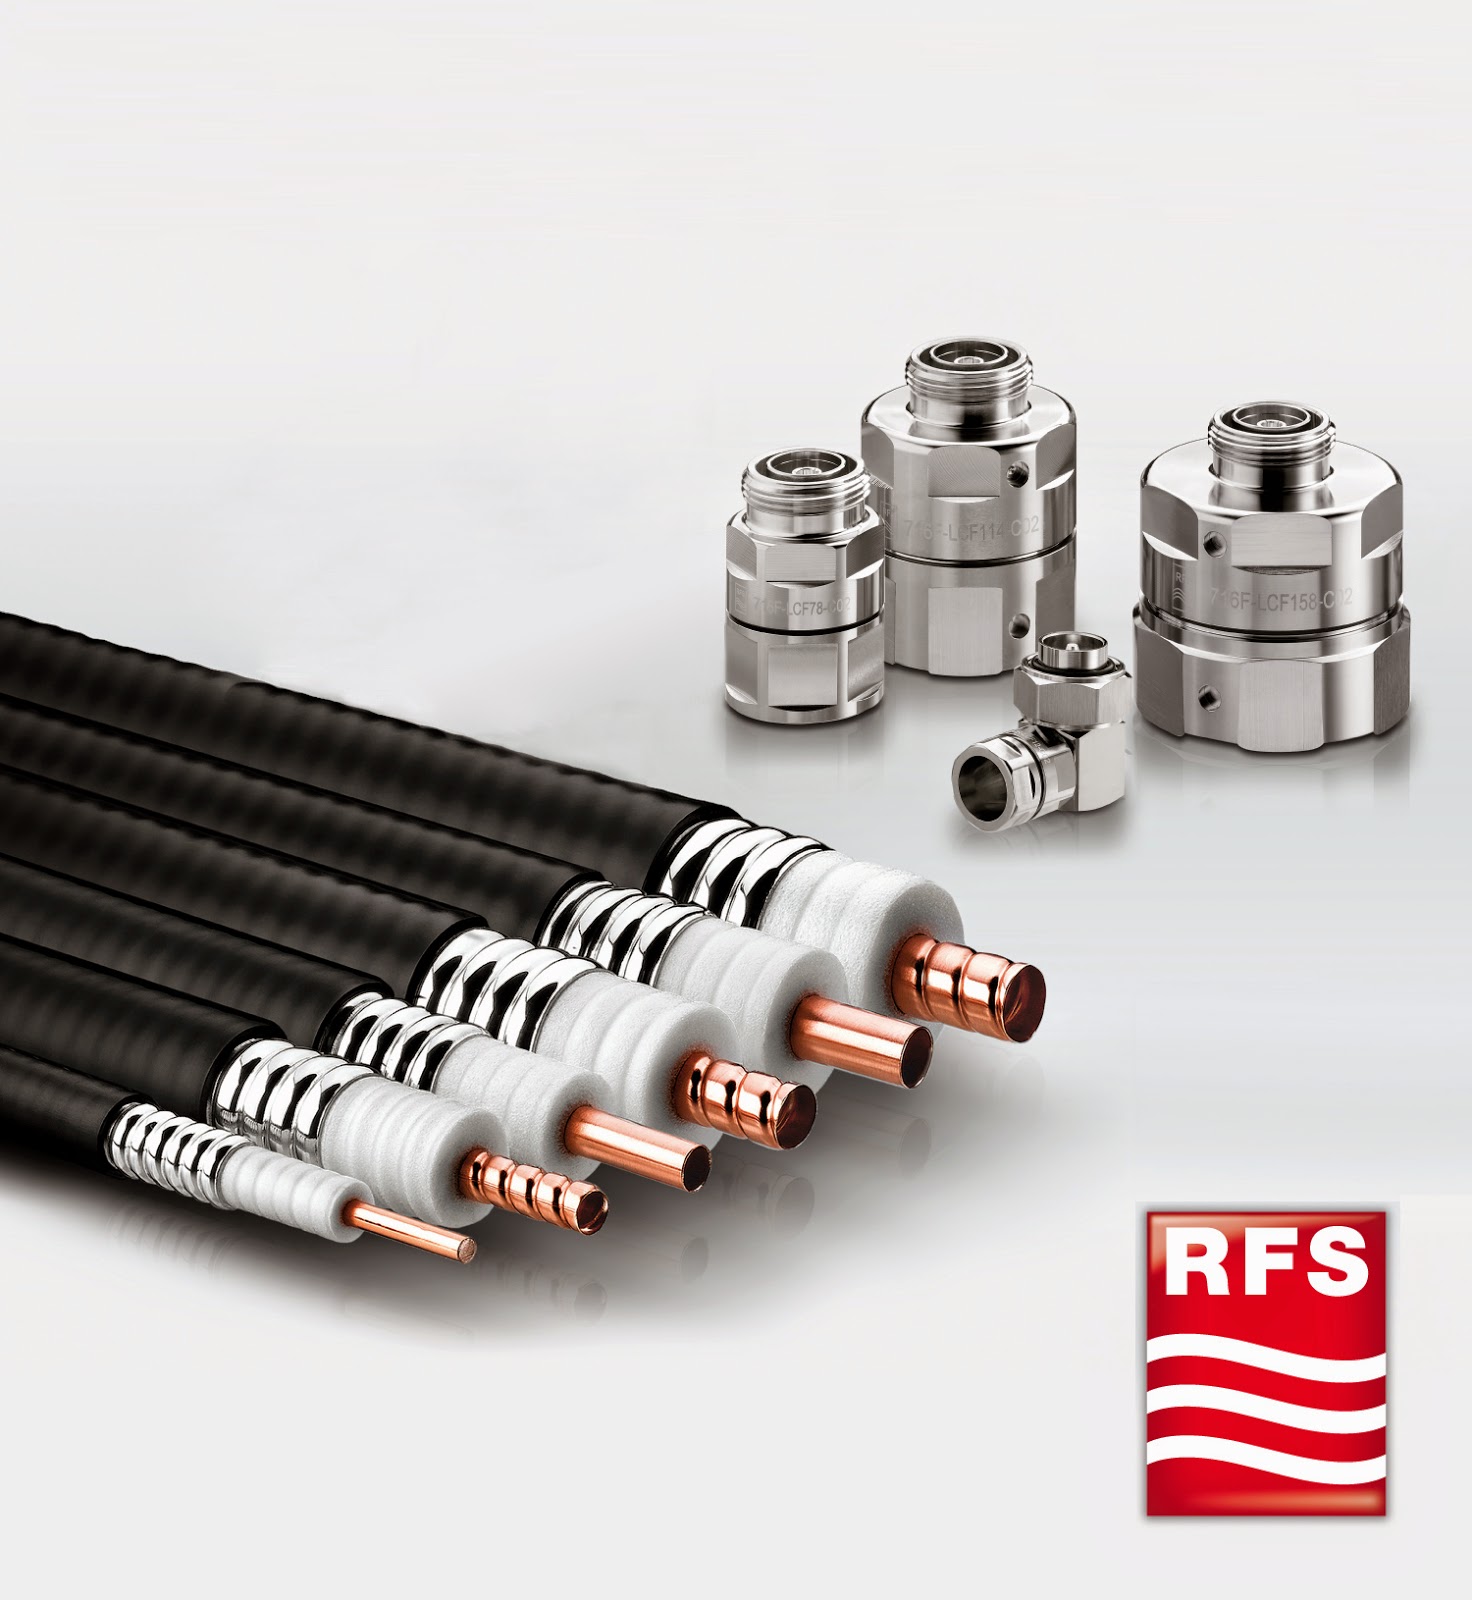 Кабель 1 5 8. Коаксиальный кабель RFS. Фидер RFS 2 1/4. 1 5/8'' RFS кабель. Фидер коаксиальный 1 1/4".